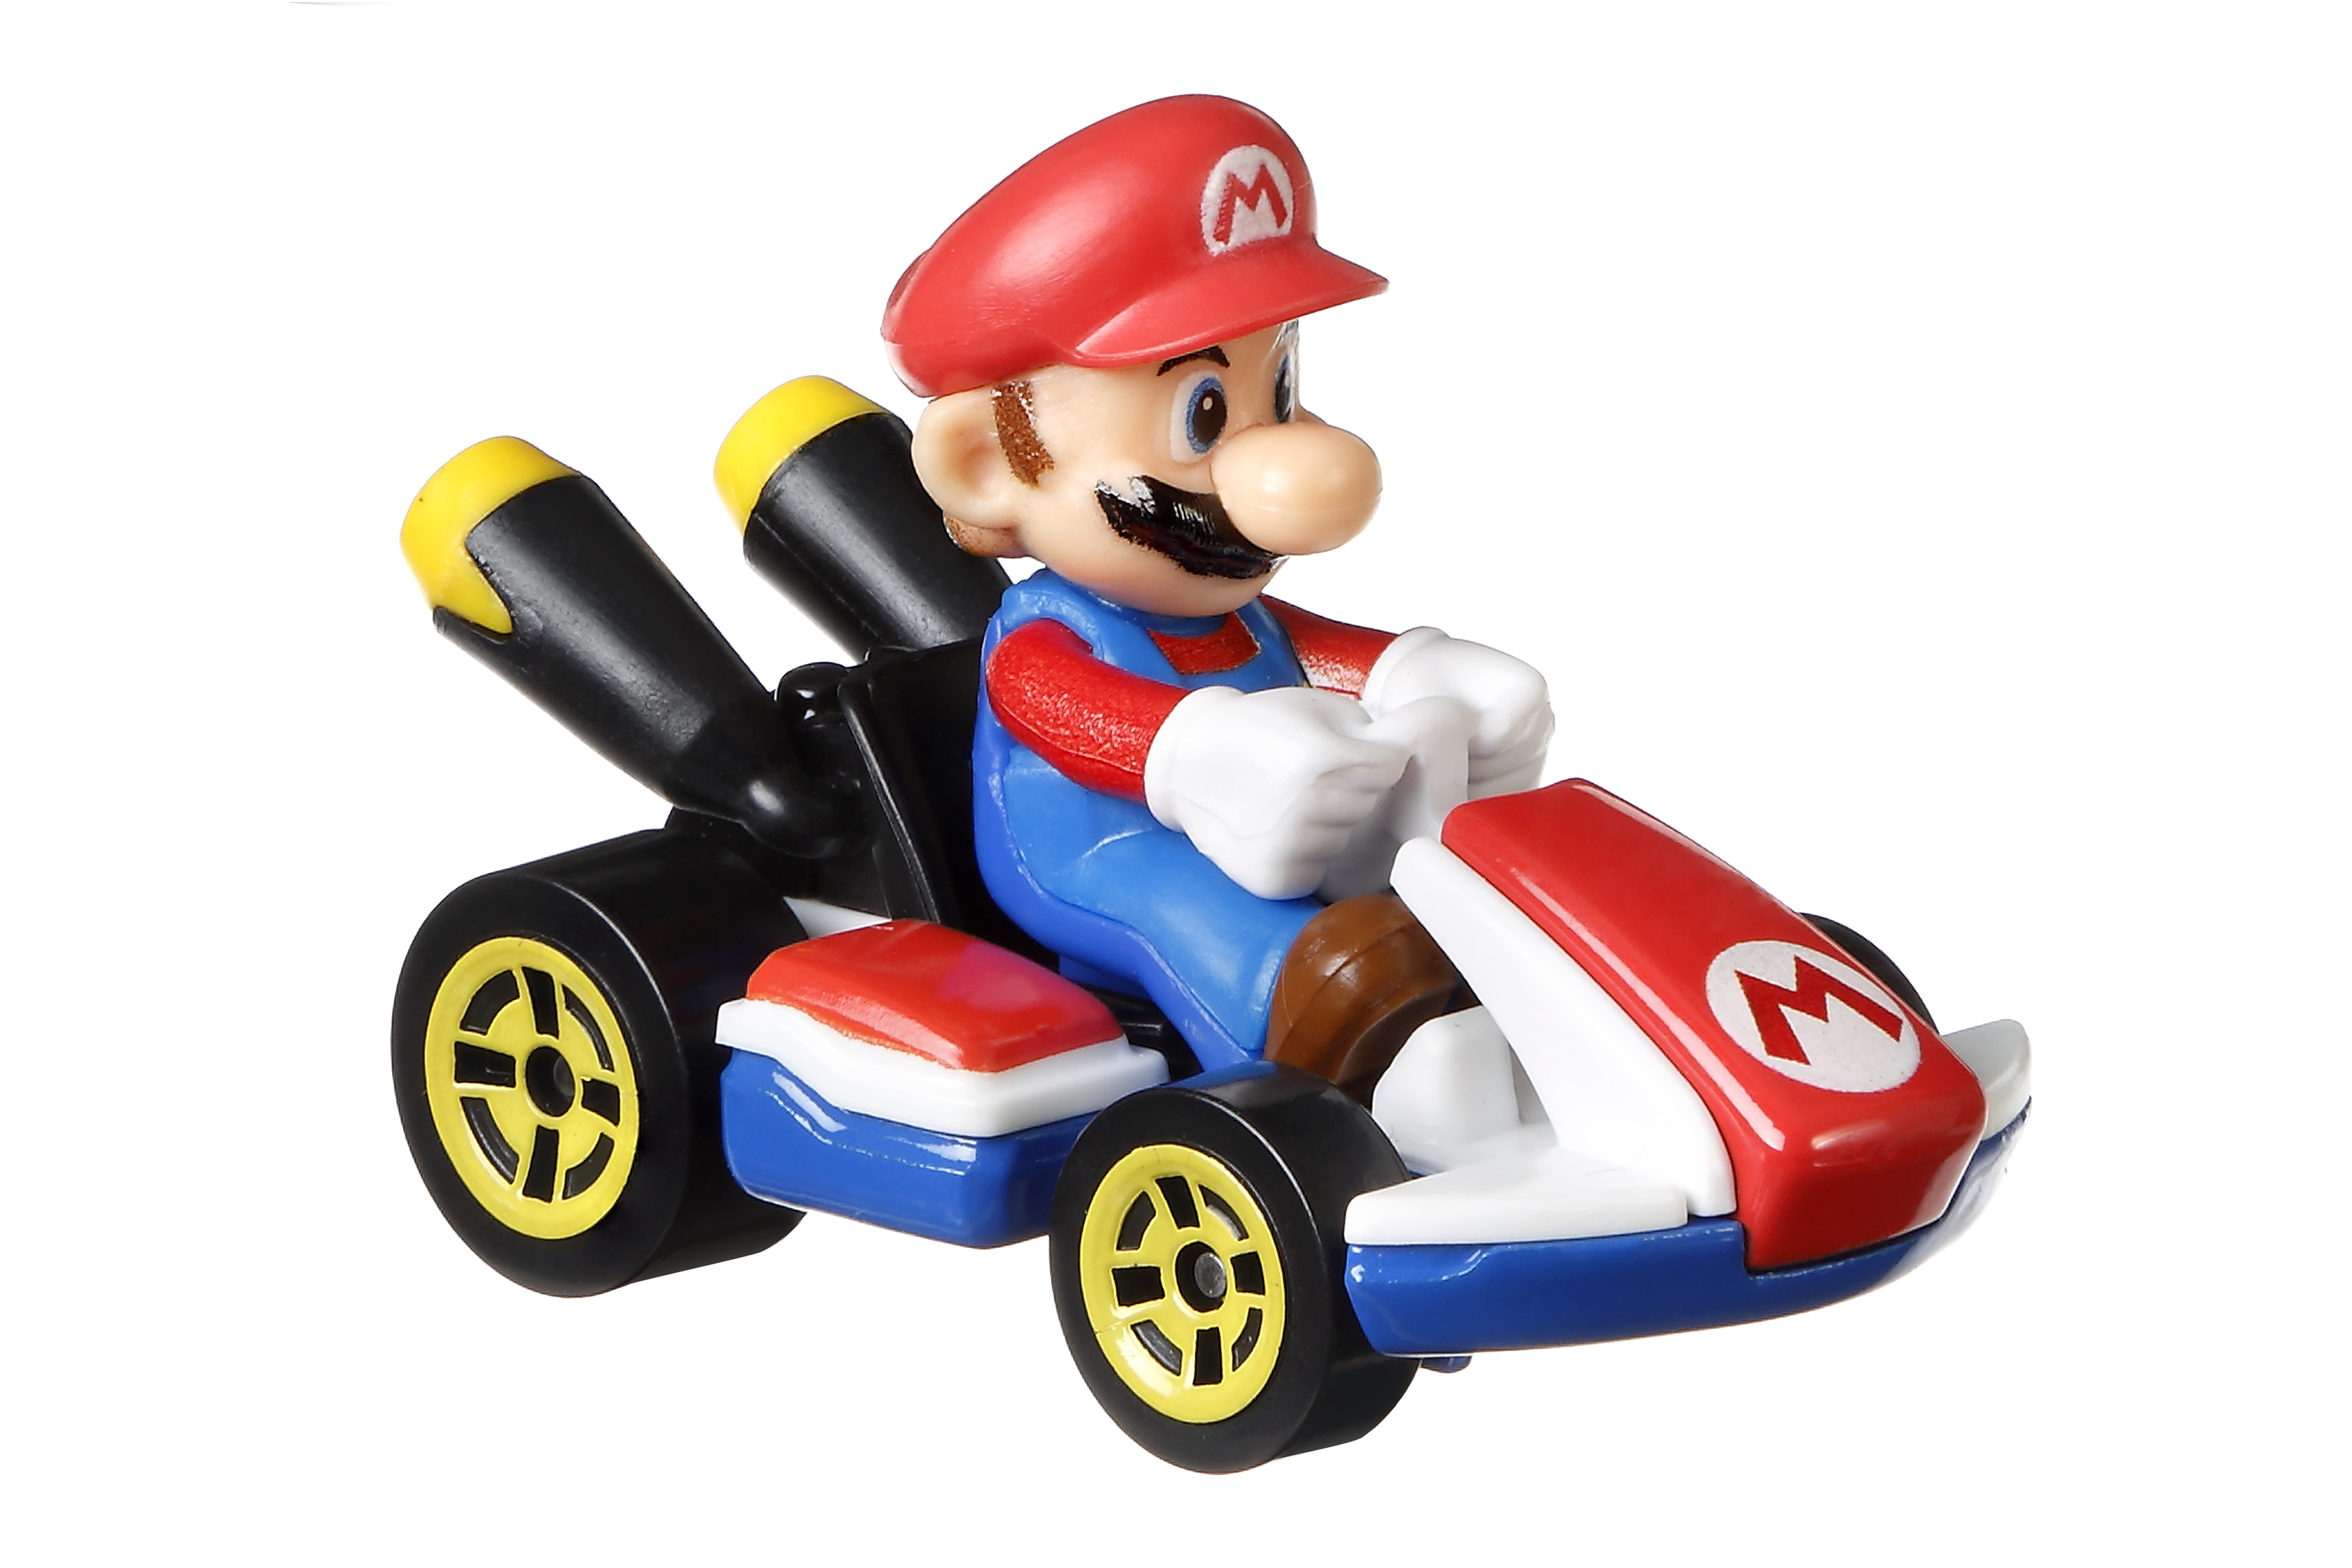 Mario Kart Mini-véhicules Mario Coffret de Jeu pour Mini-Voitures avec Piste modulable Hot Wheels Mario Kart Chaos au château de Bowser avec Mini-véhicule Inclus Luigi Bowser et Yoshi 